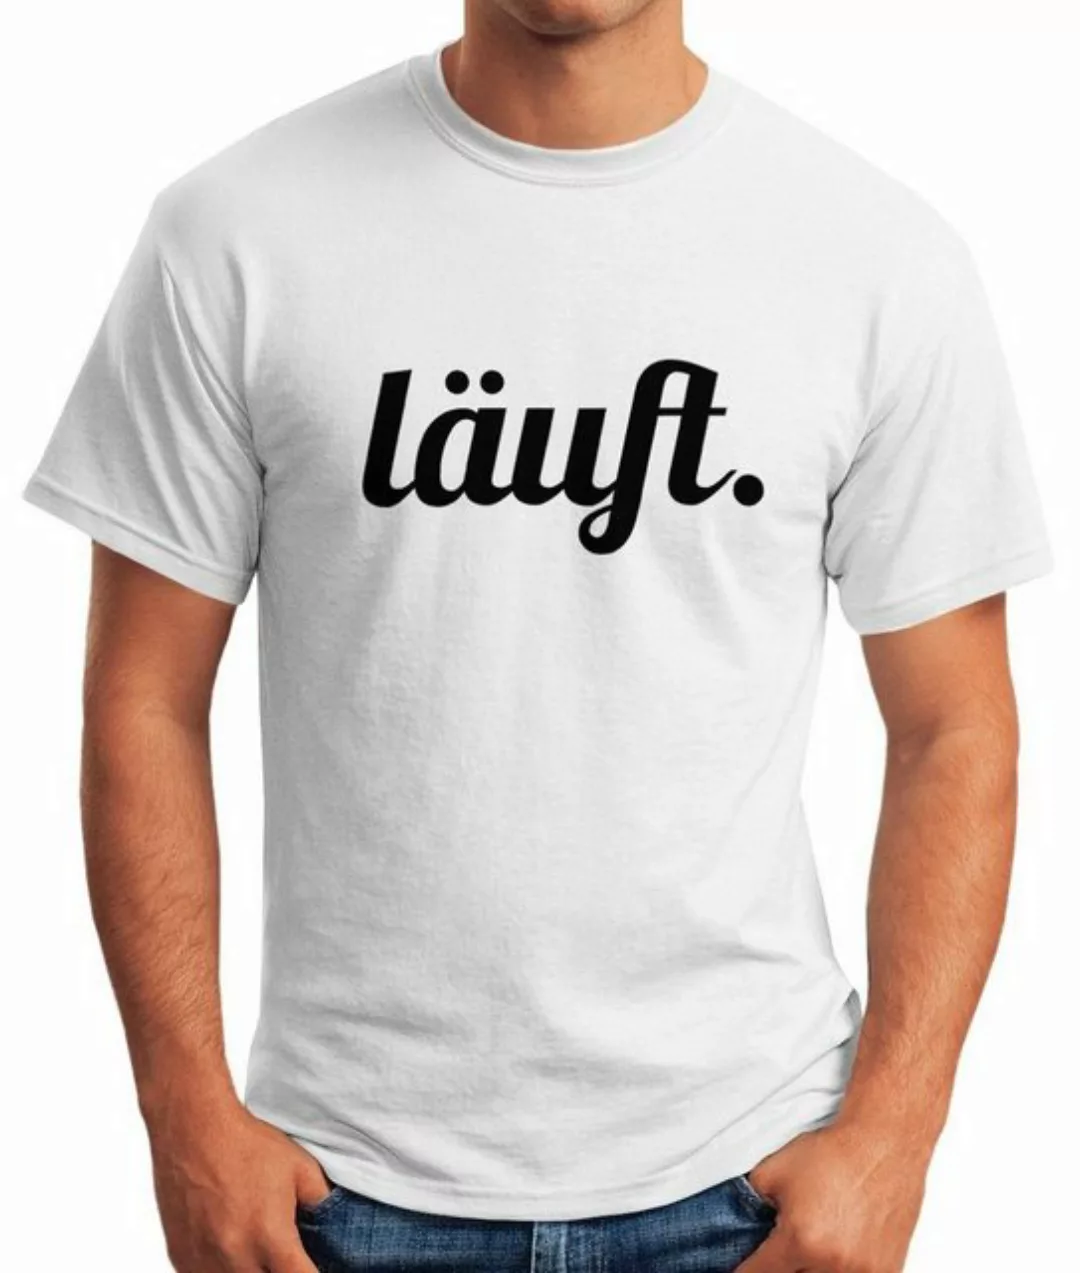 MoonWorks Print-Shirt cooles lustiges Herren T-Shirt - läuft - Fun-Shirt mi günstig online kaufen